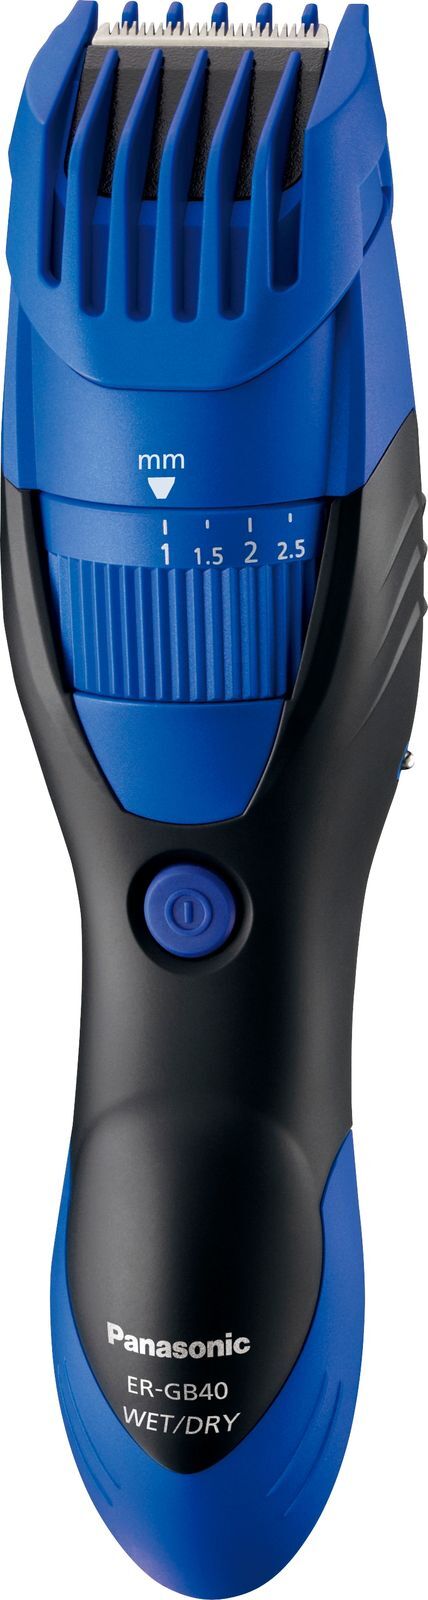 Триммер для стрижки бороды и усов Panasonic ER-GB40-A520, синий